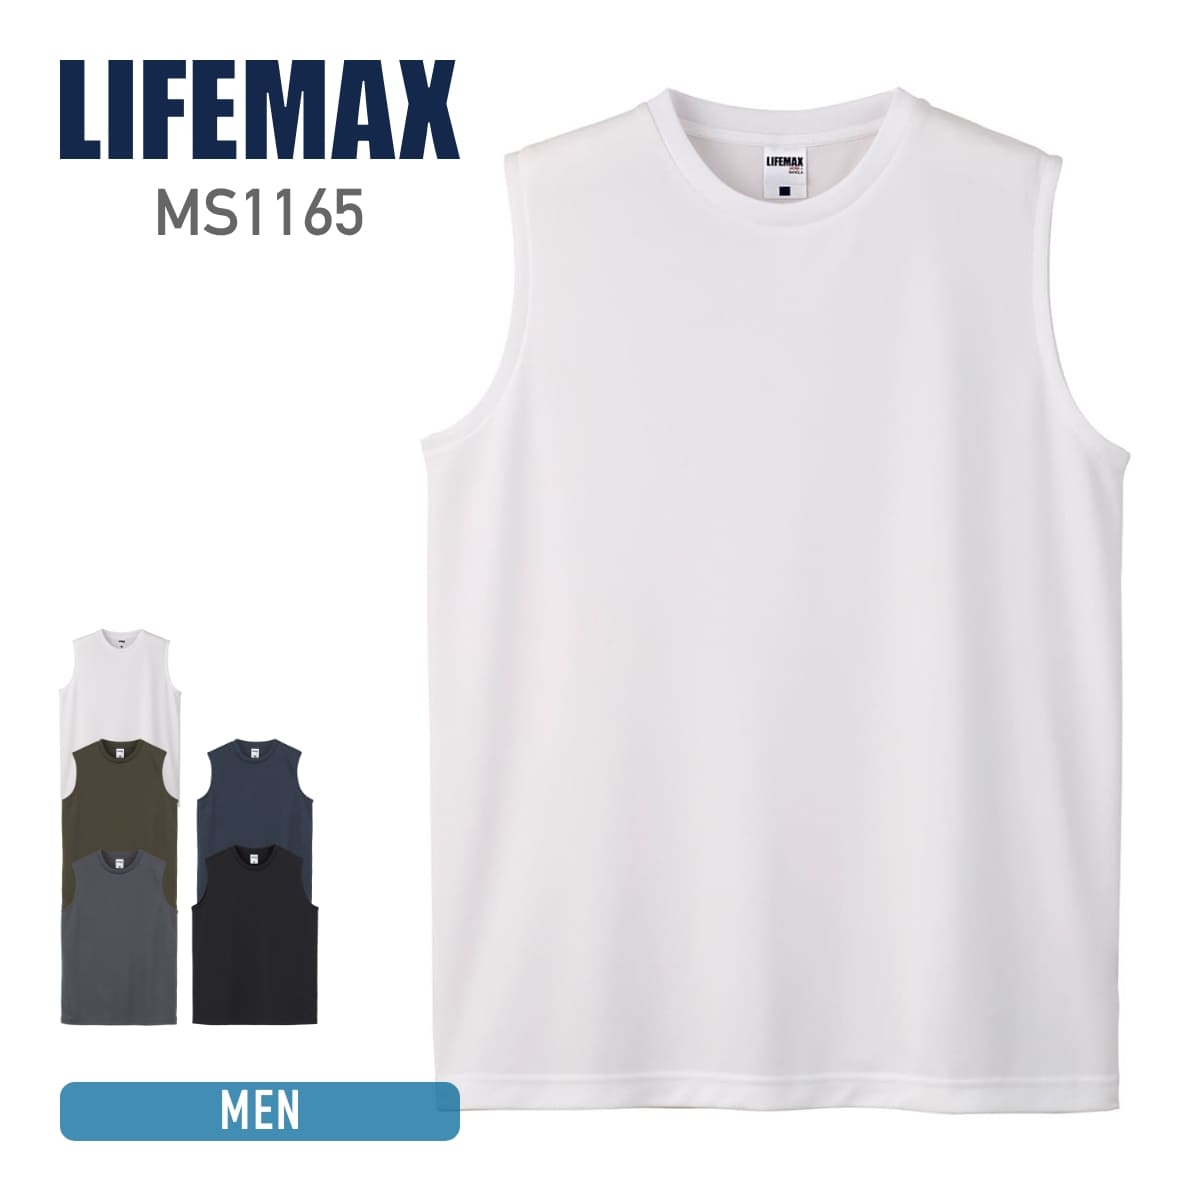 tシャツ メンズ 無地  LIFEMAX ライフマックス 4.3oz ノースリーブTシャツ (ポリジン加工) ms1165 男女兼用 抗菌 防臭 銀イオン 吸汗 速乾 UVカット スポーツ